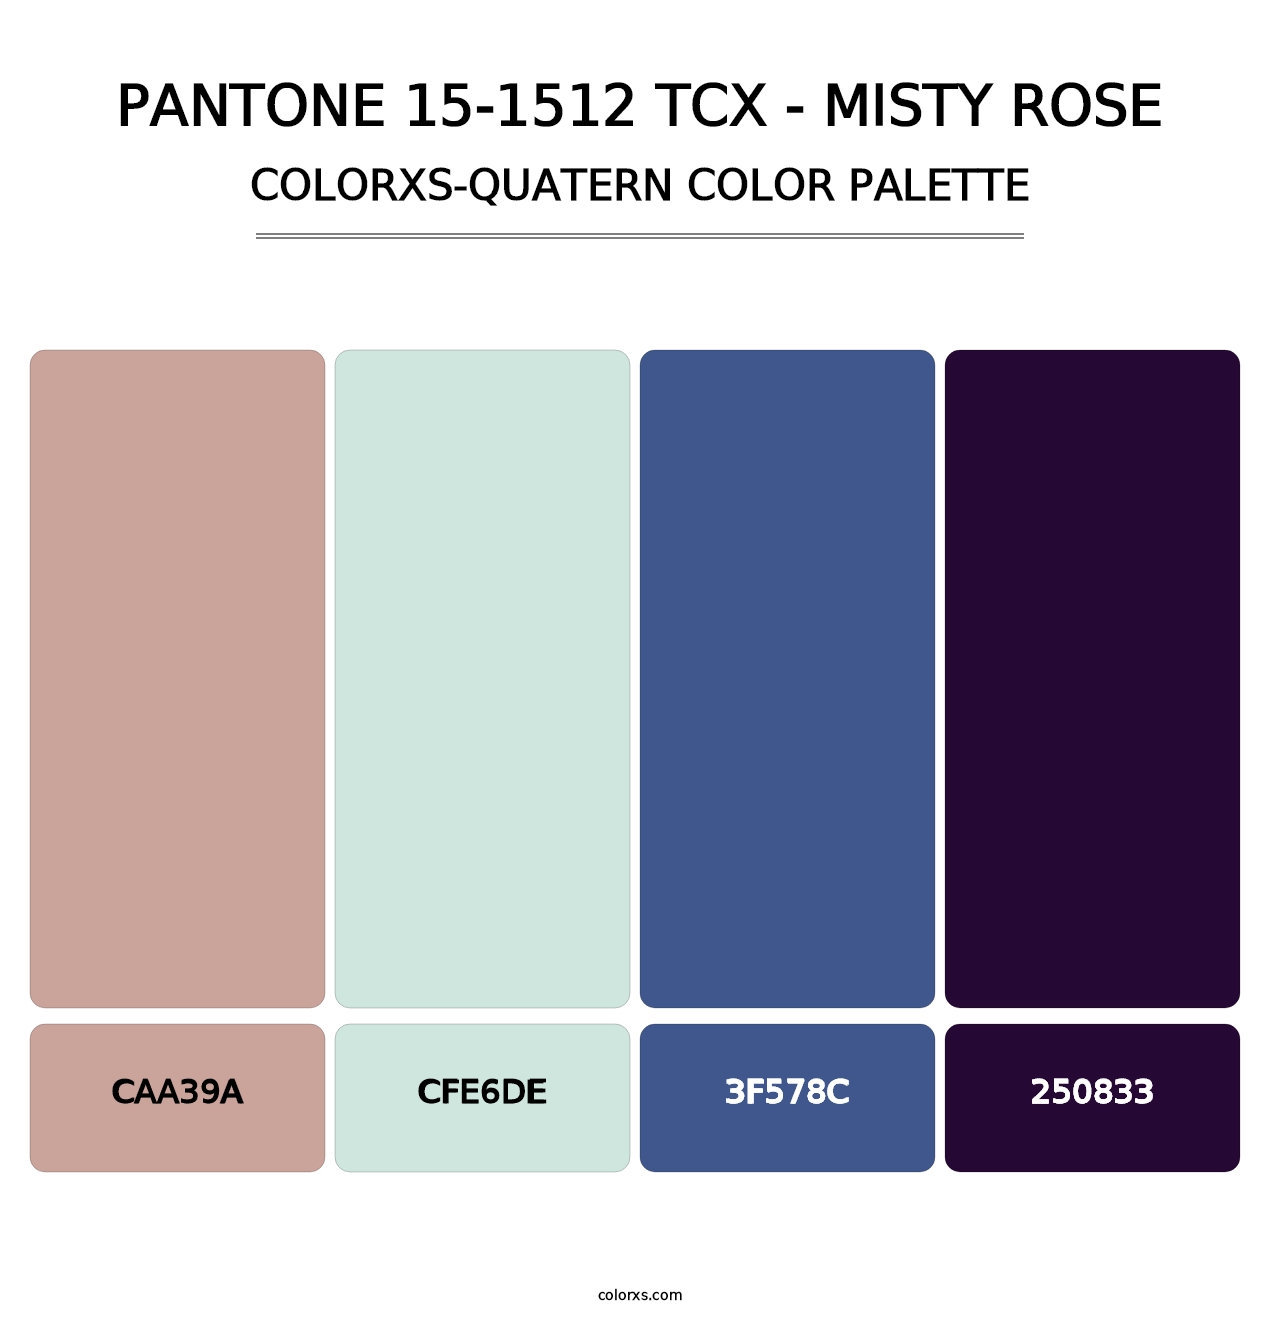 PANTONE 15-1512 TCX - Misty Rose - Colorxs Quatern Palette